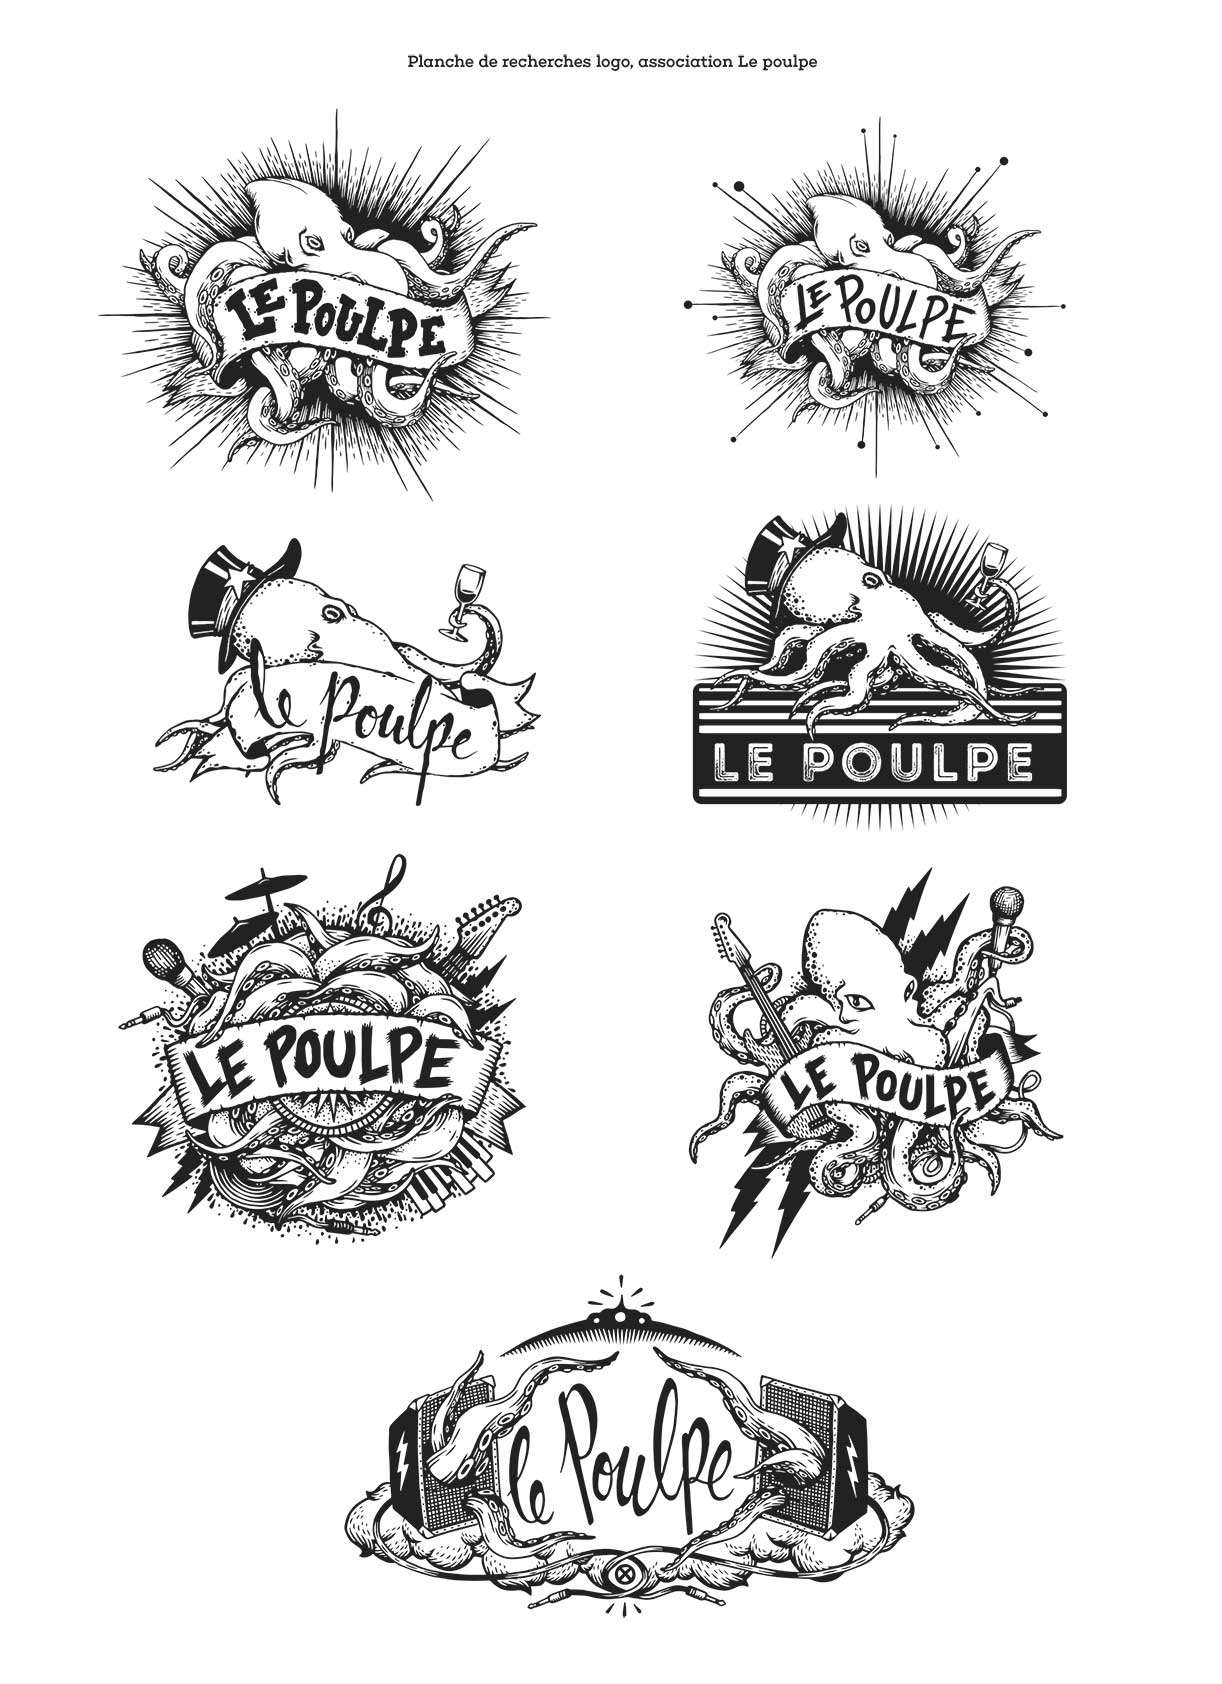 logo-association-le-poulpe